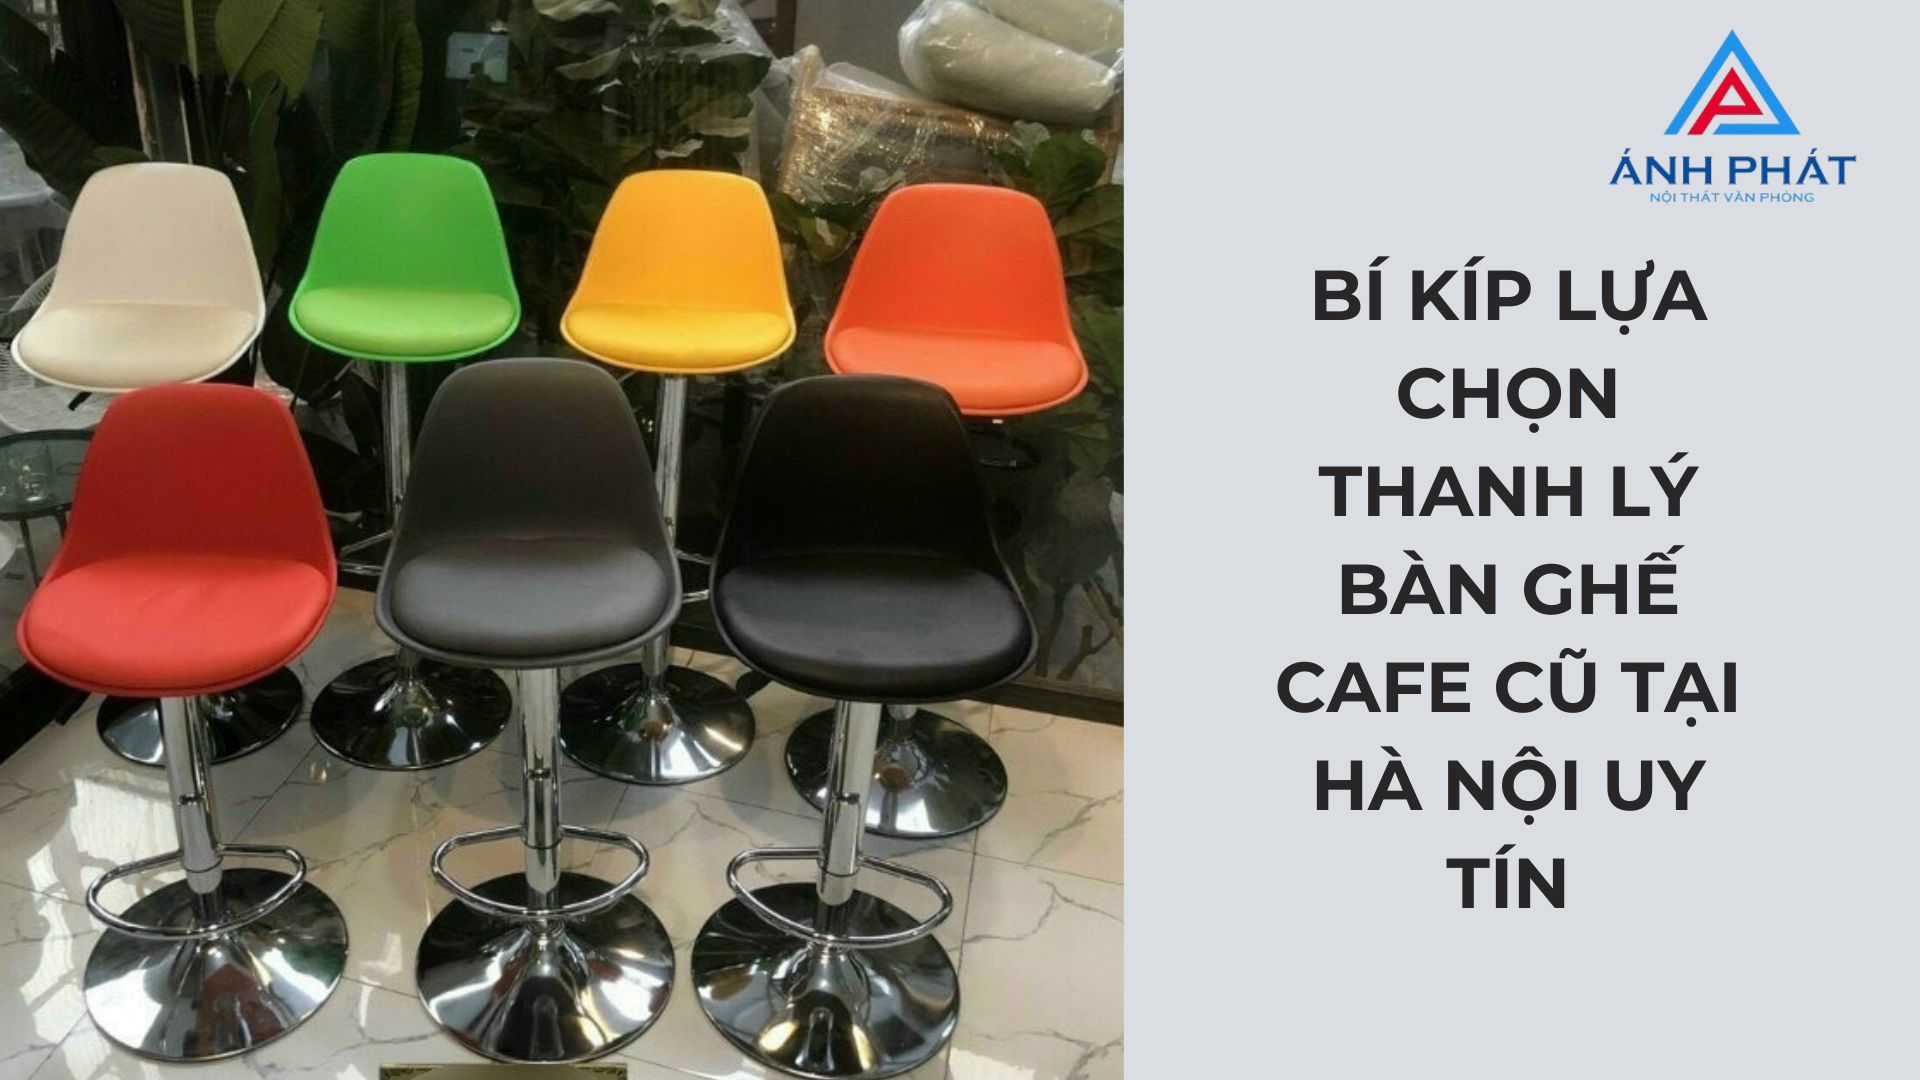 Bí Kíp Lựa Chọn Thanh Lý Bàn Ghế Cafe Cũ Tại Hà Nội Uy Tín